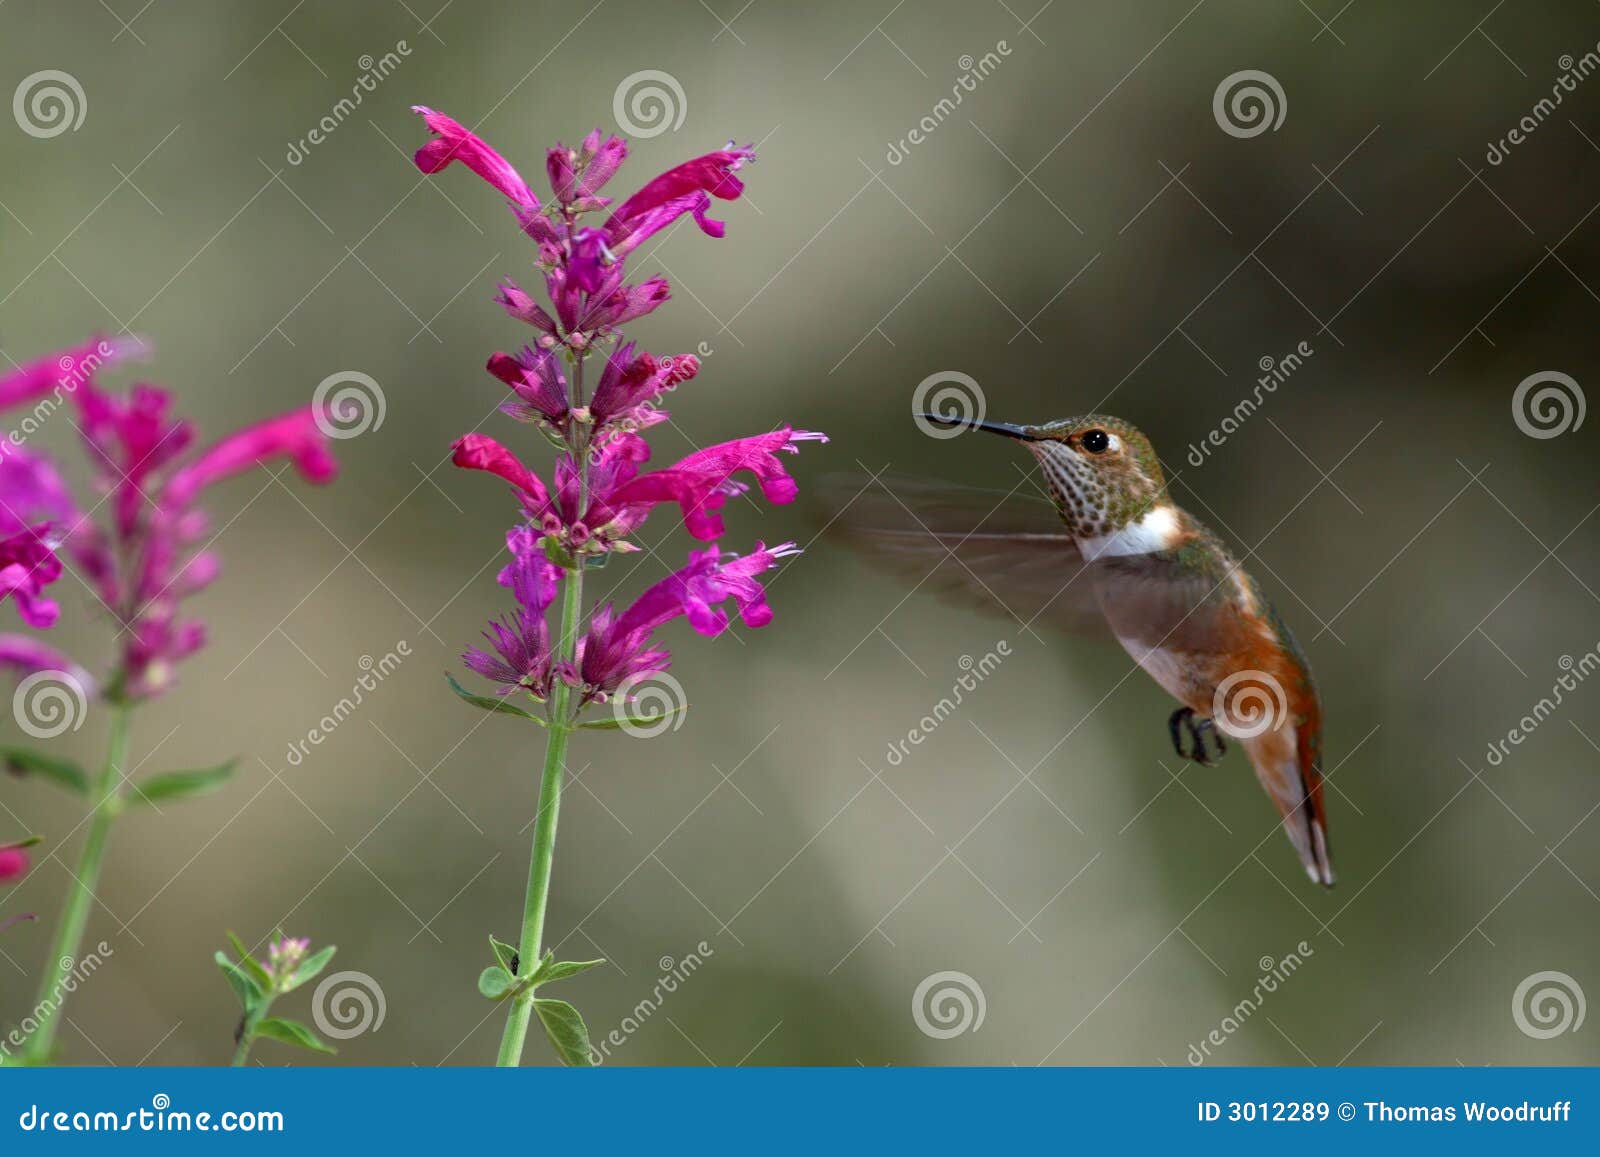 hovering hummingbird